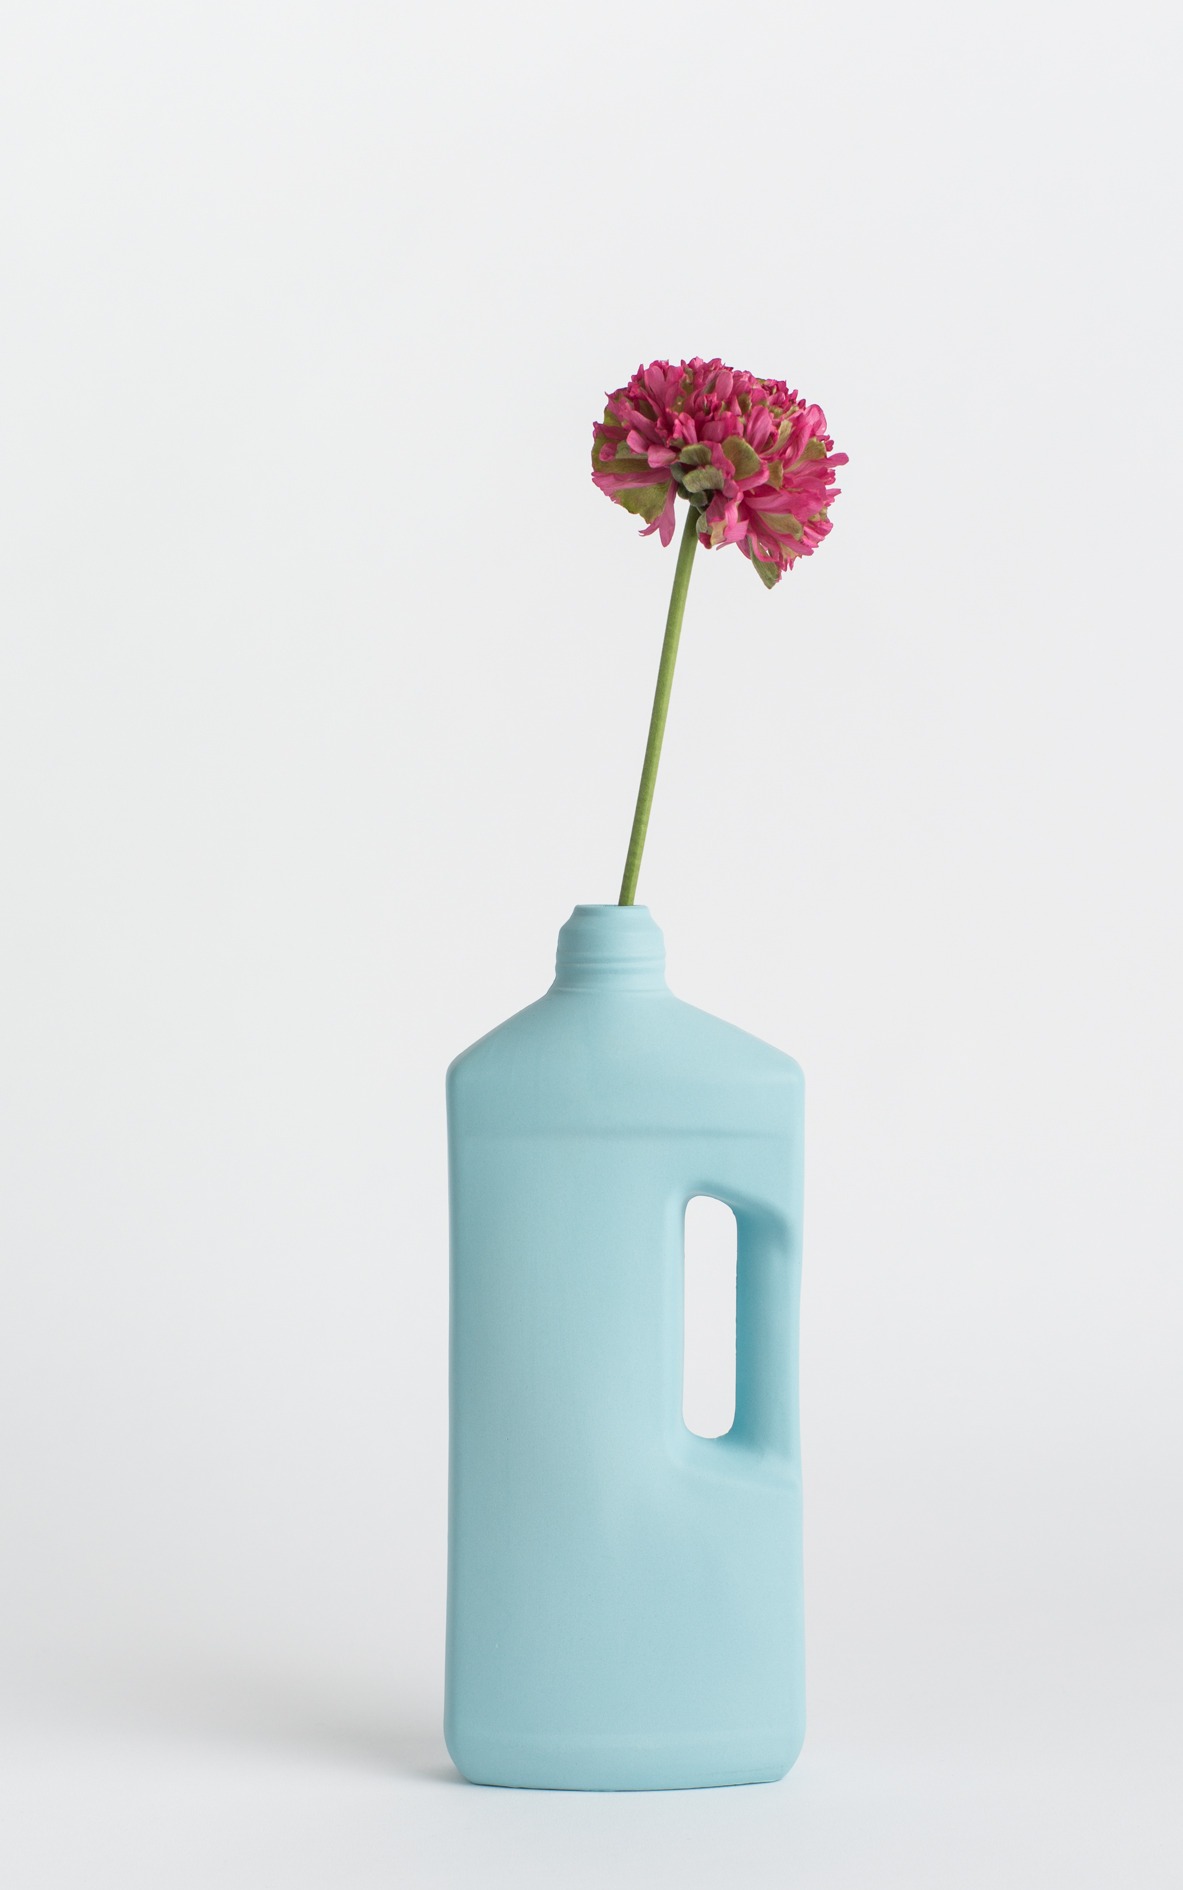 bottle vase #3 light blue with flower